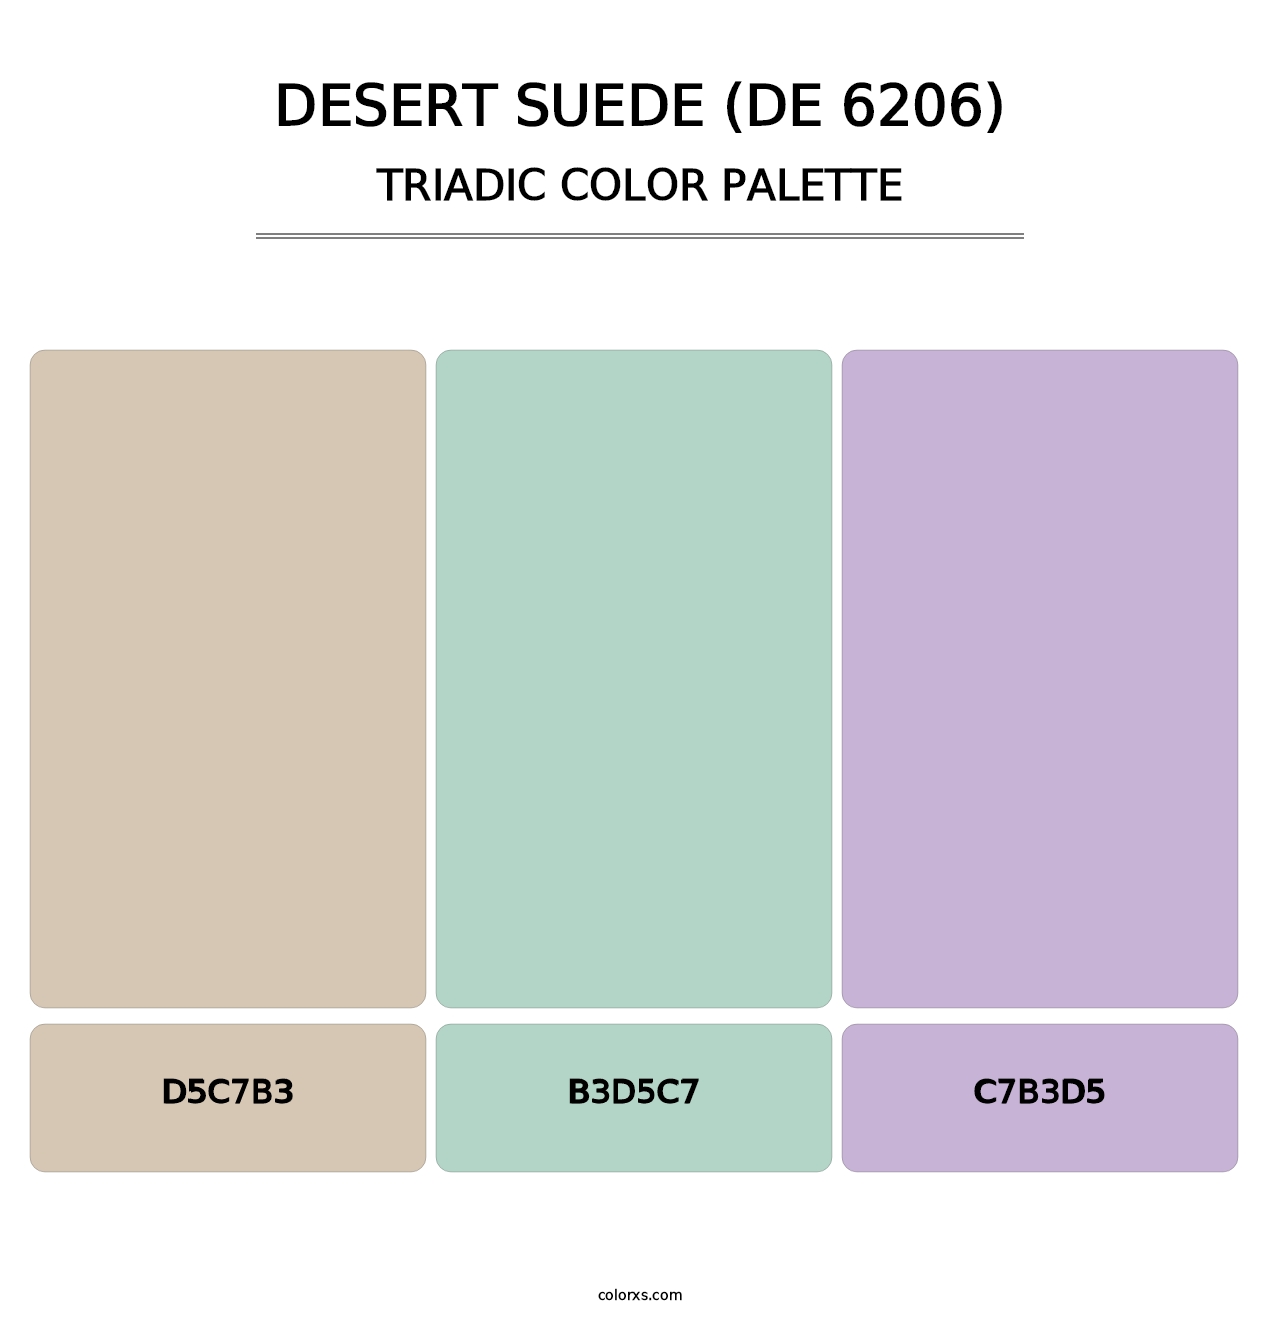 Desert Suede (DE 6206) - Triadic Color Palette